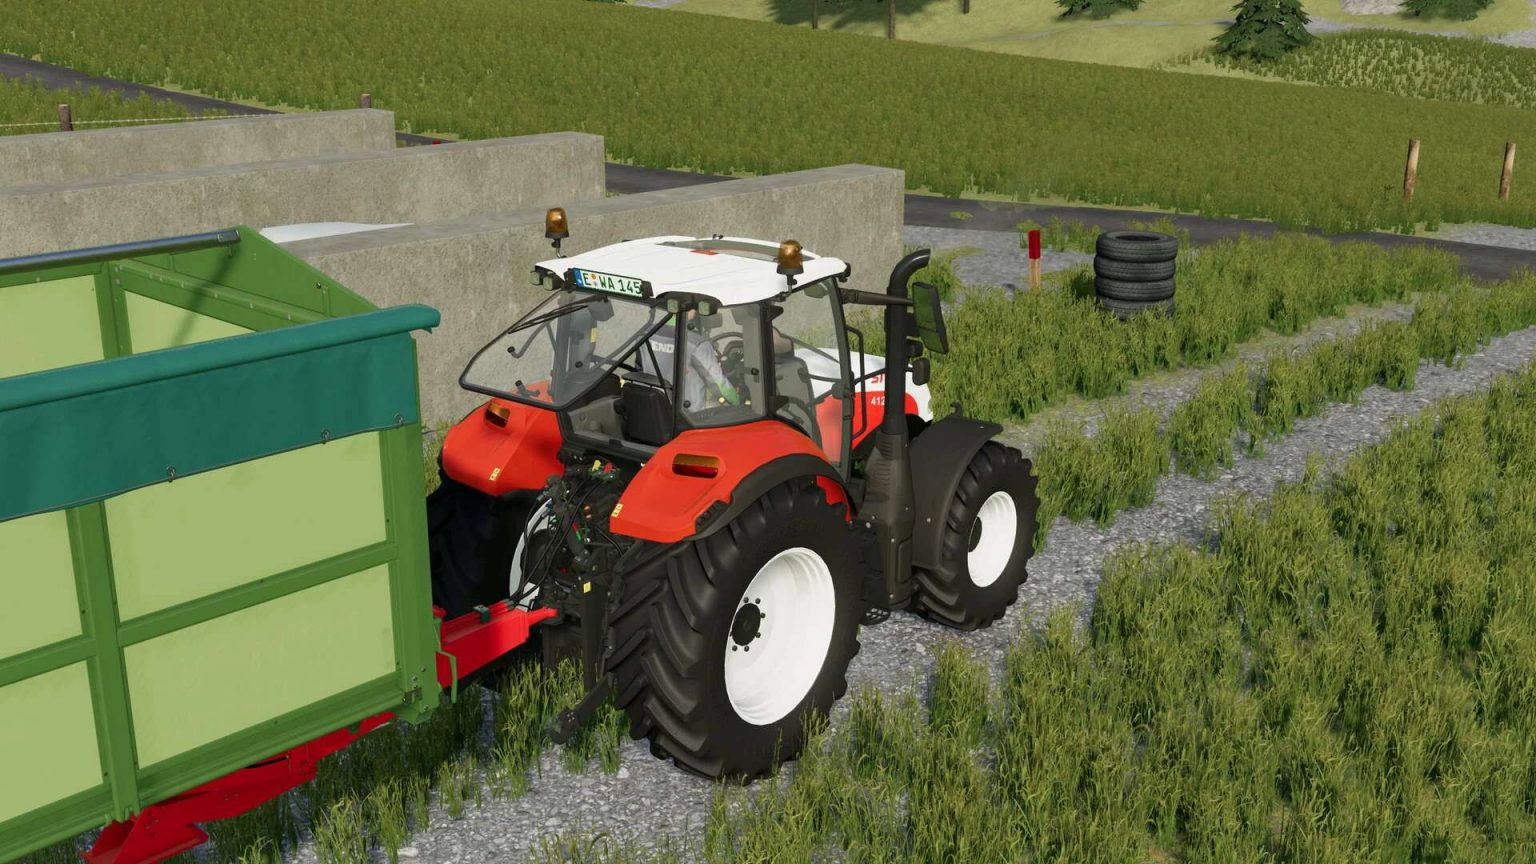 Steyr Multi Serie 2016 V10 Fs22 Farming Simulator 22 Mod Fs22 Mod 2136